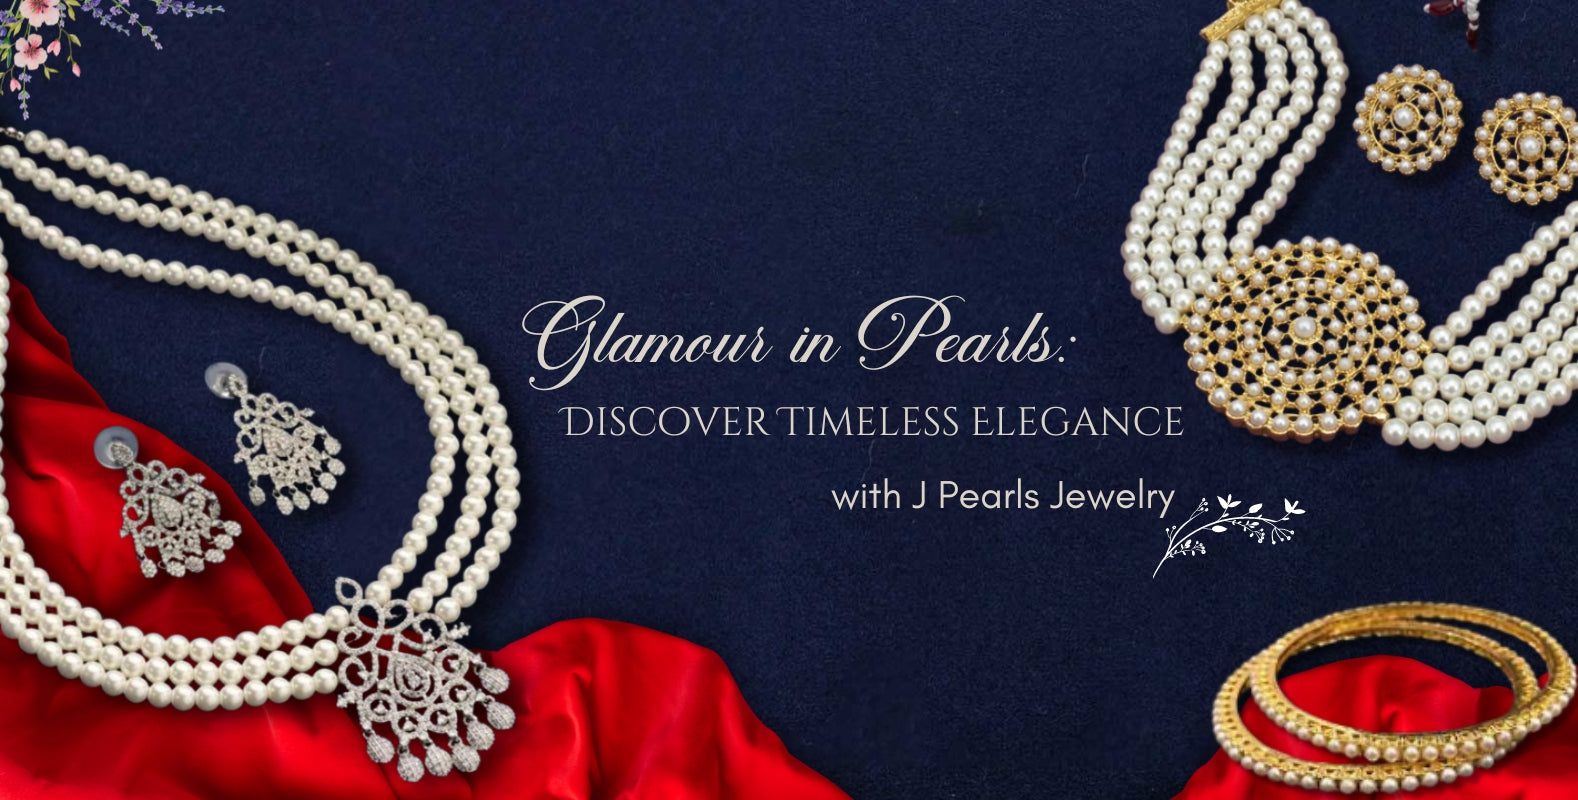 J Pearls Jewelry